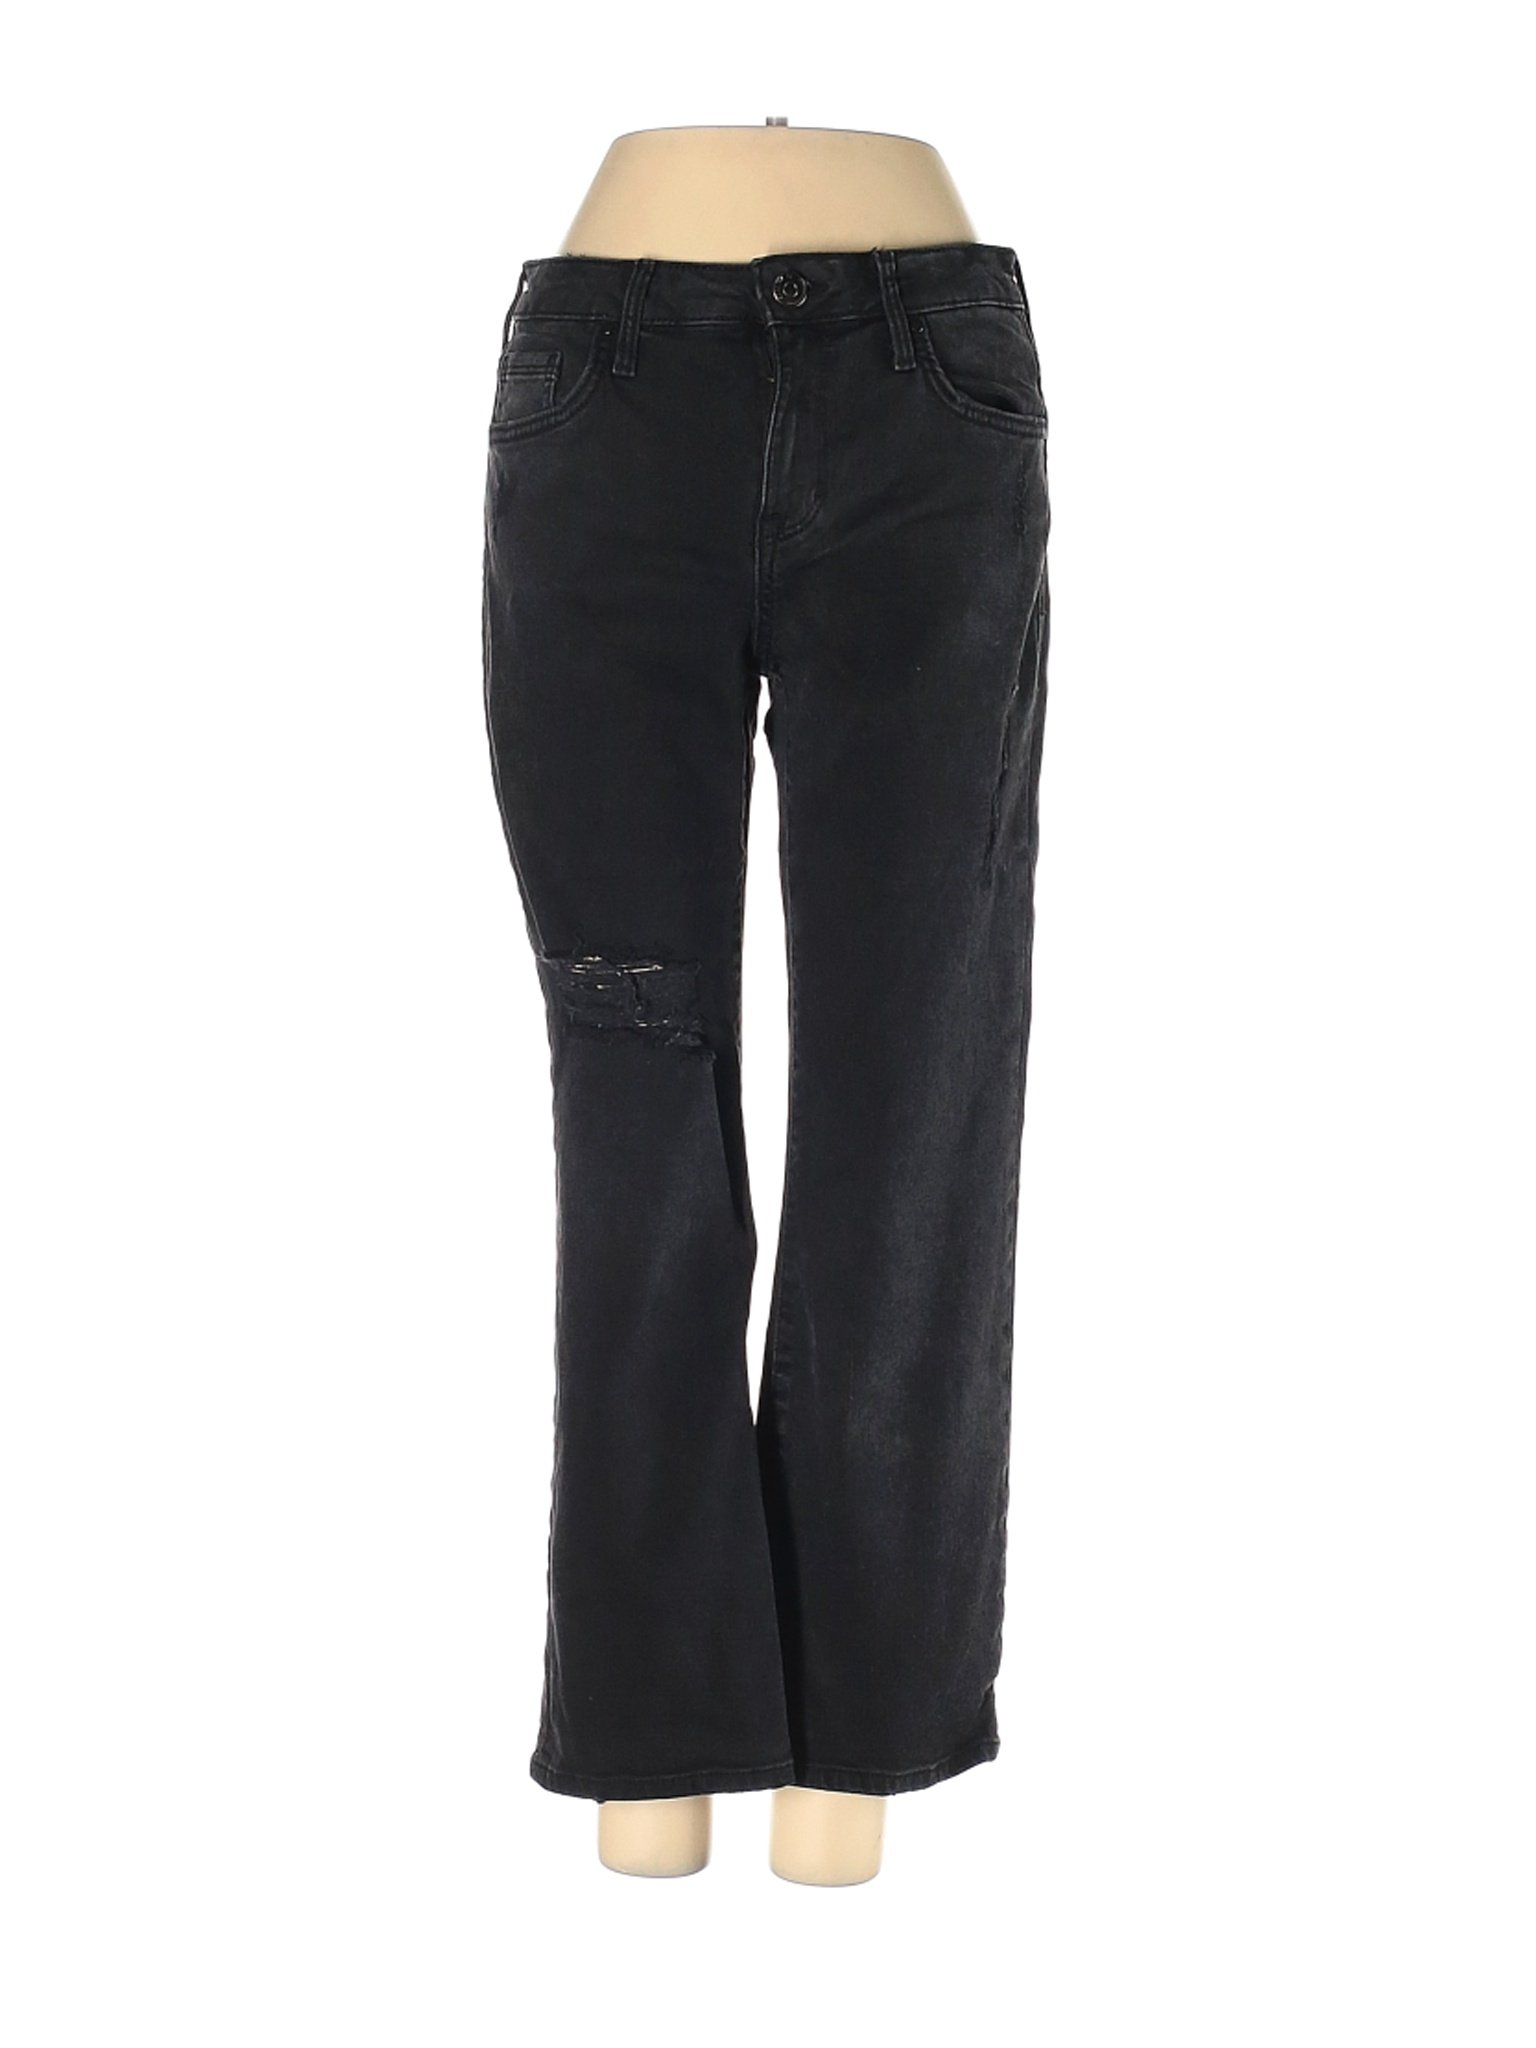 Forever 21 Women Black Jeans 27W | eBay